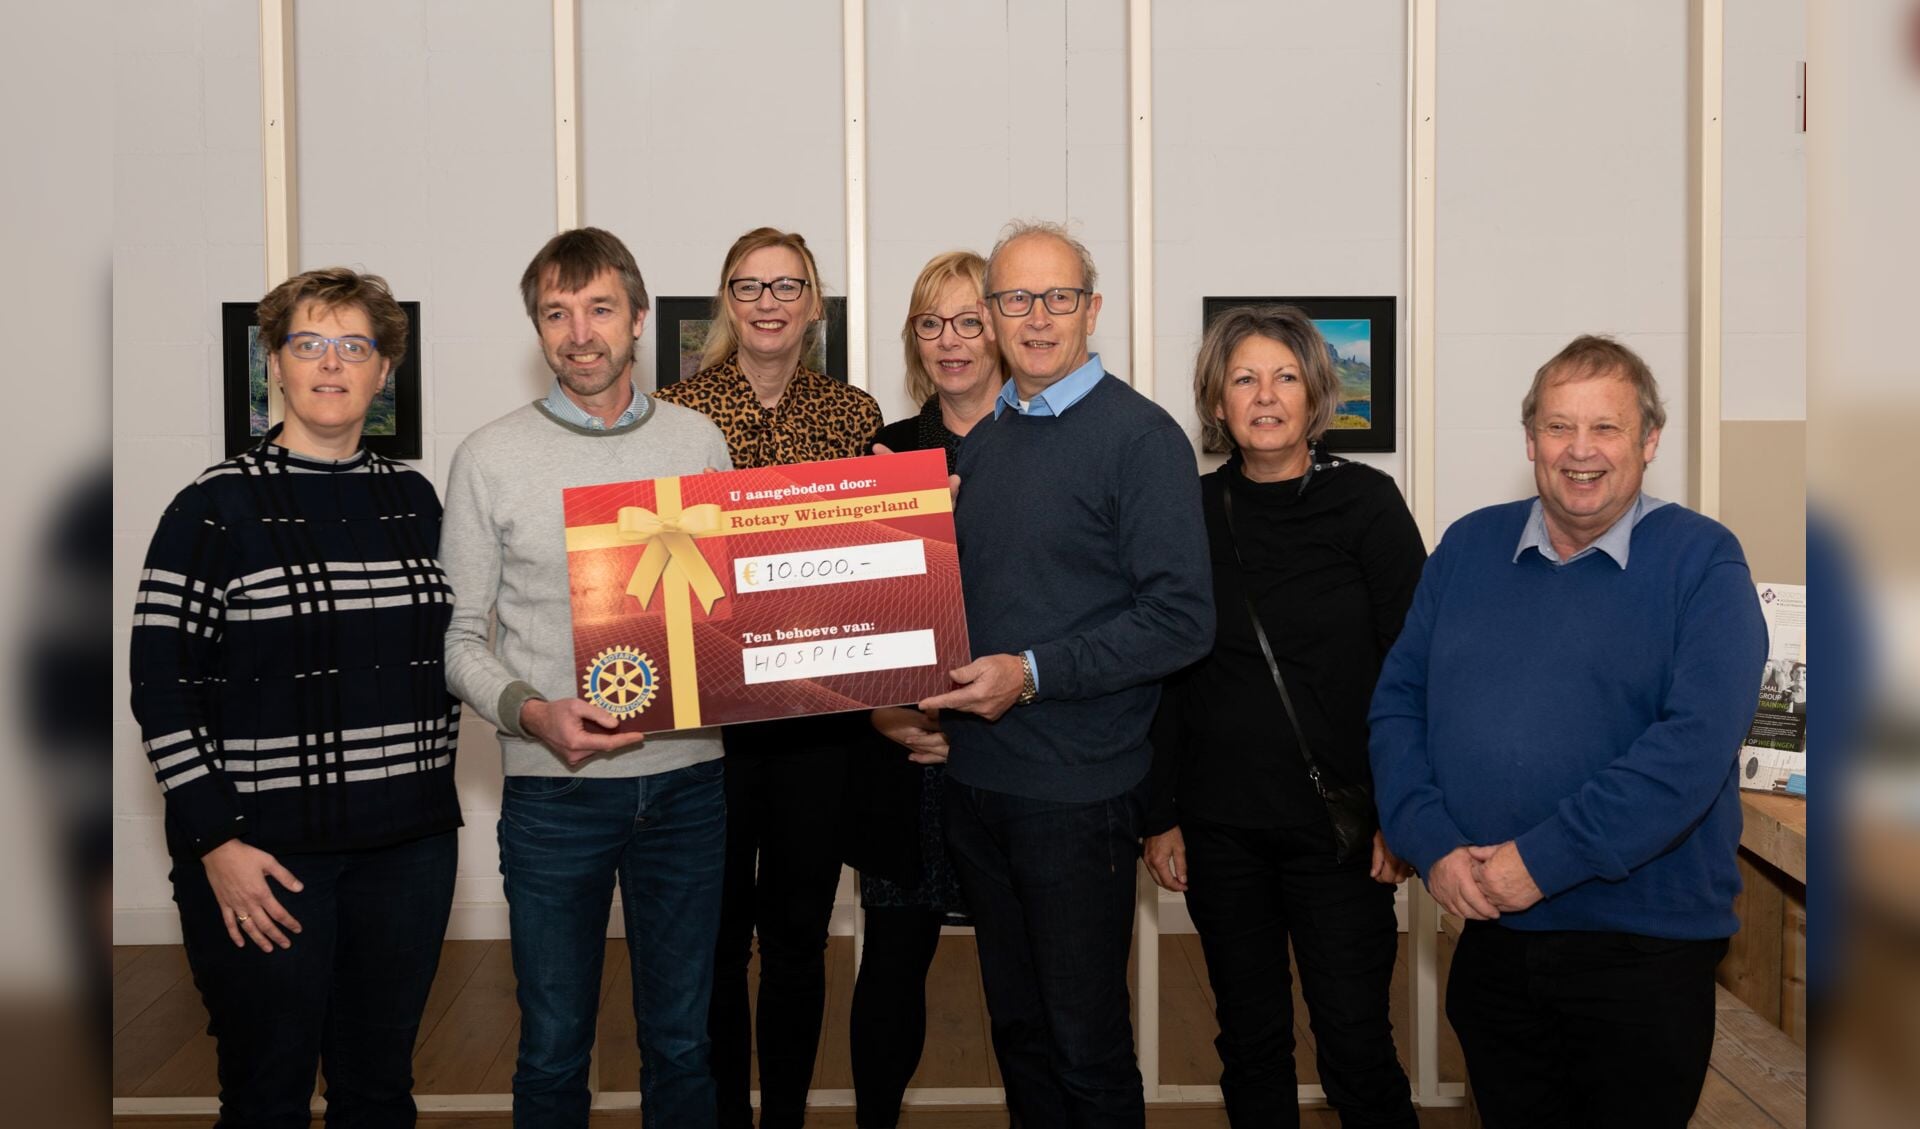 Rotary Wieringerland schenkt 10.000,- euro aan Stichting Hospice Hollands Kroon. (Foto: aangeleverd)